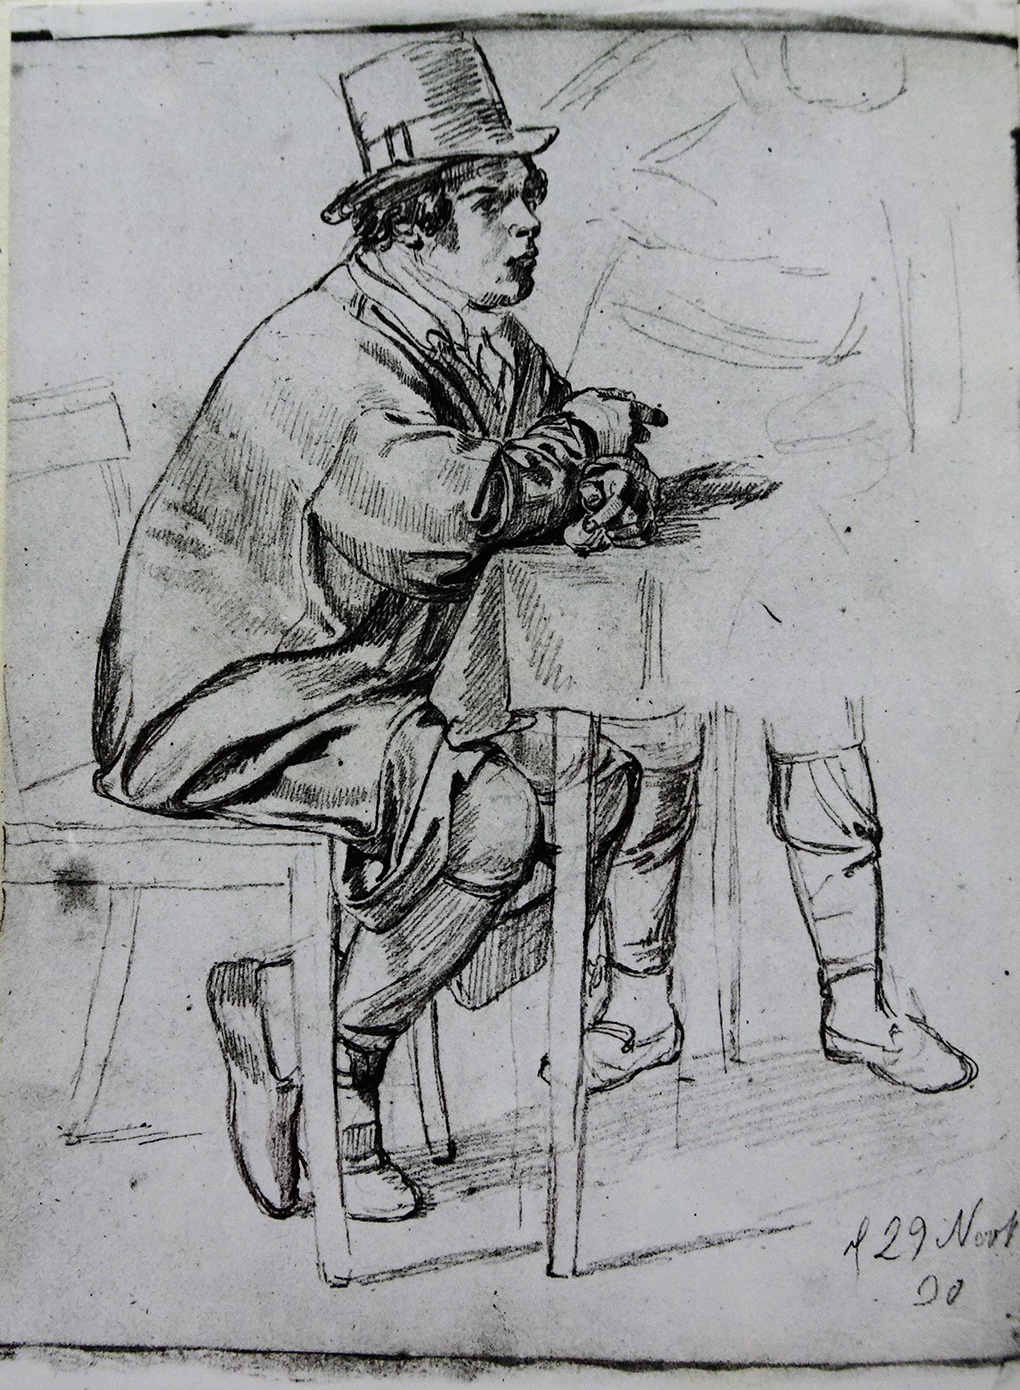 Ludwig Most, Studium gościa siedzącego za stołem, 29 listopada 1830, ołówek, papier welinowy, rysunek w szkicowniku nr II, karta 2, odwrocie, Muzeum Narodowe w Szczecinie